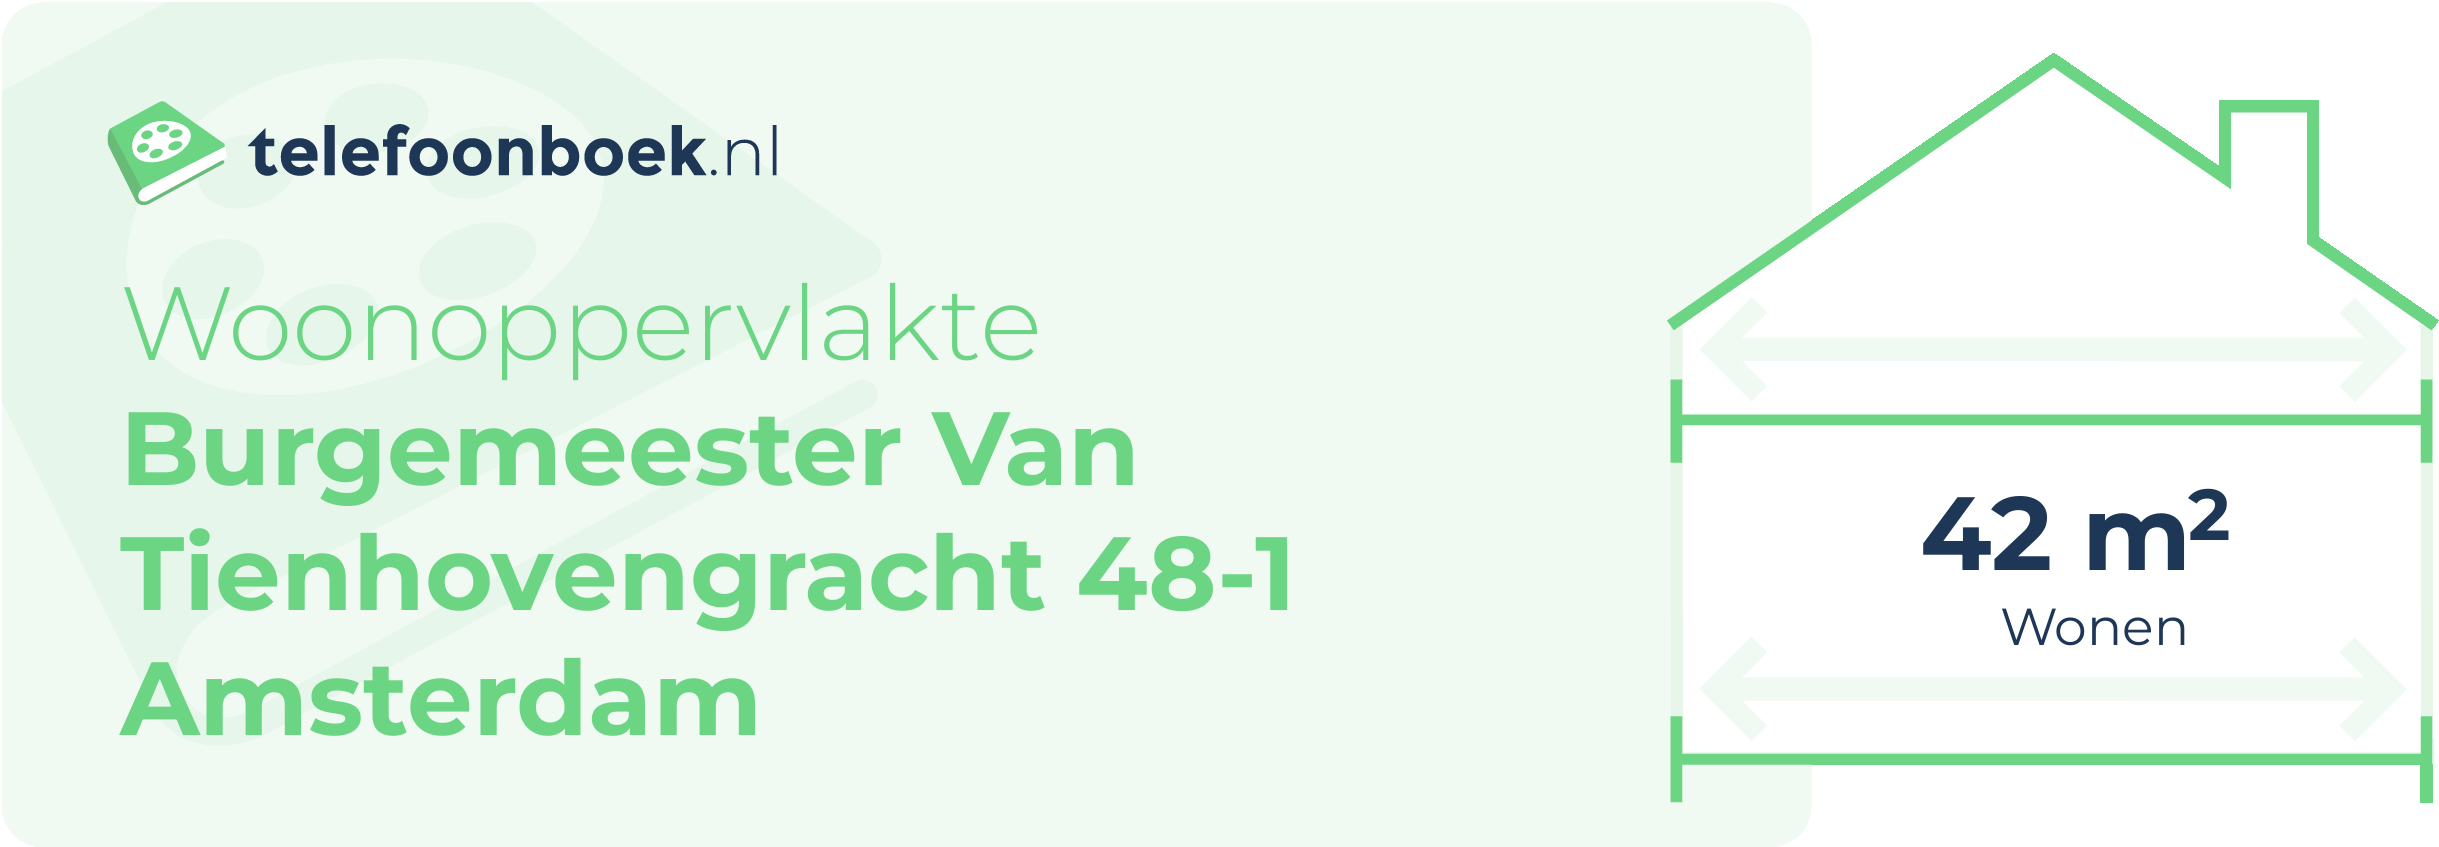 Woonoppervlakte Burgemeester Van Tienhovengracht 48-1 Amsterdam